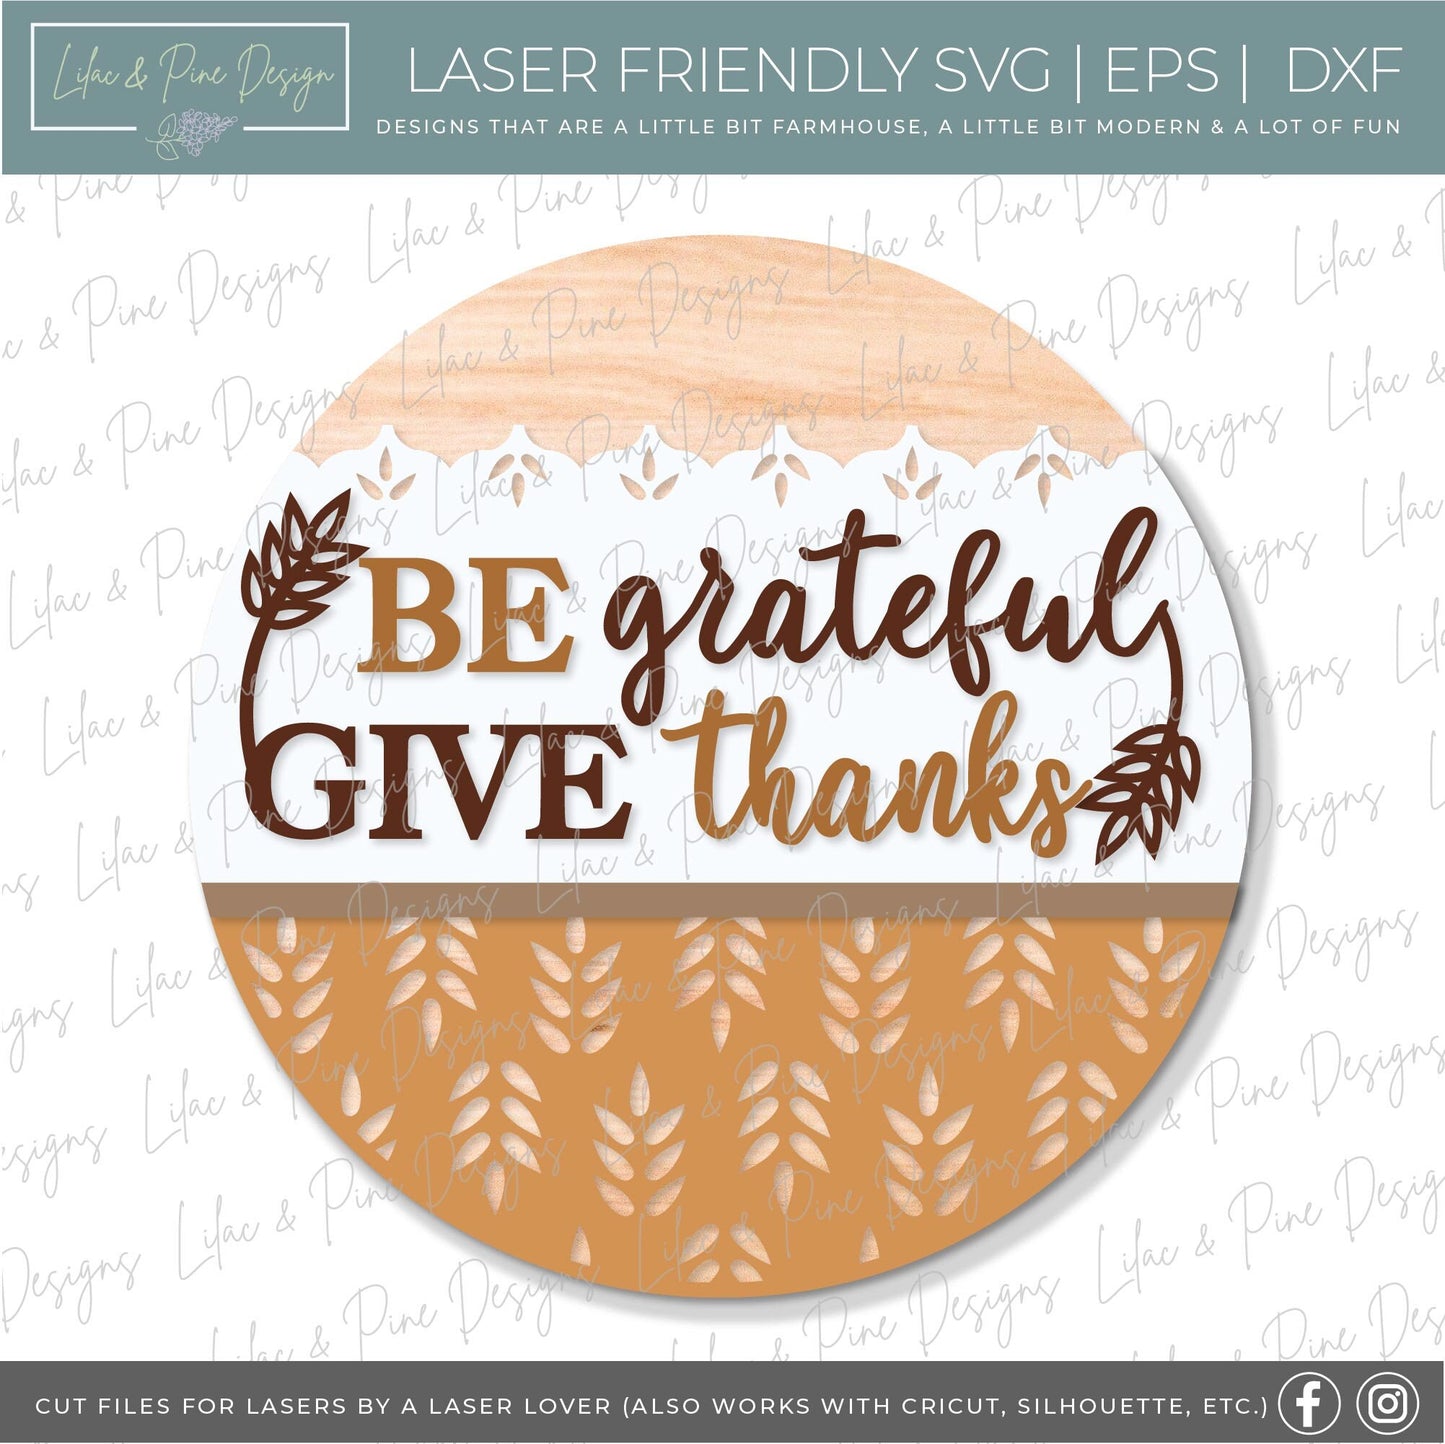 Thanksgiving door hanger SVG, Give Thanks sign SVG, Grateful door hanger svg, Fall porch decor, Fall sign svg, Glowforge SVG, laser cut file